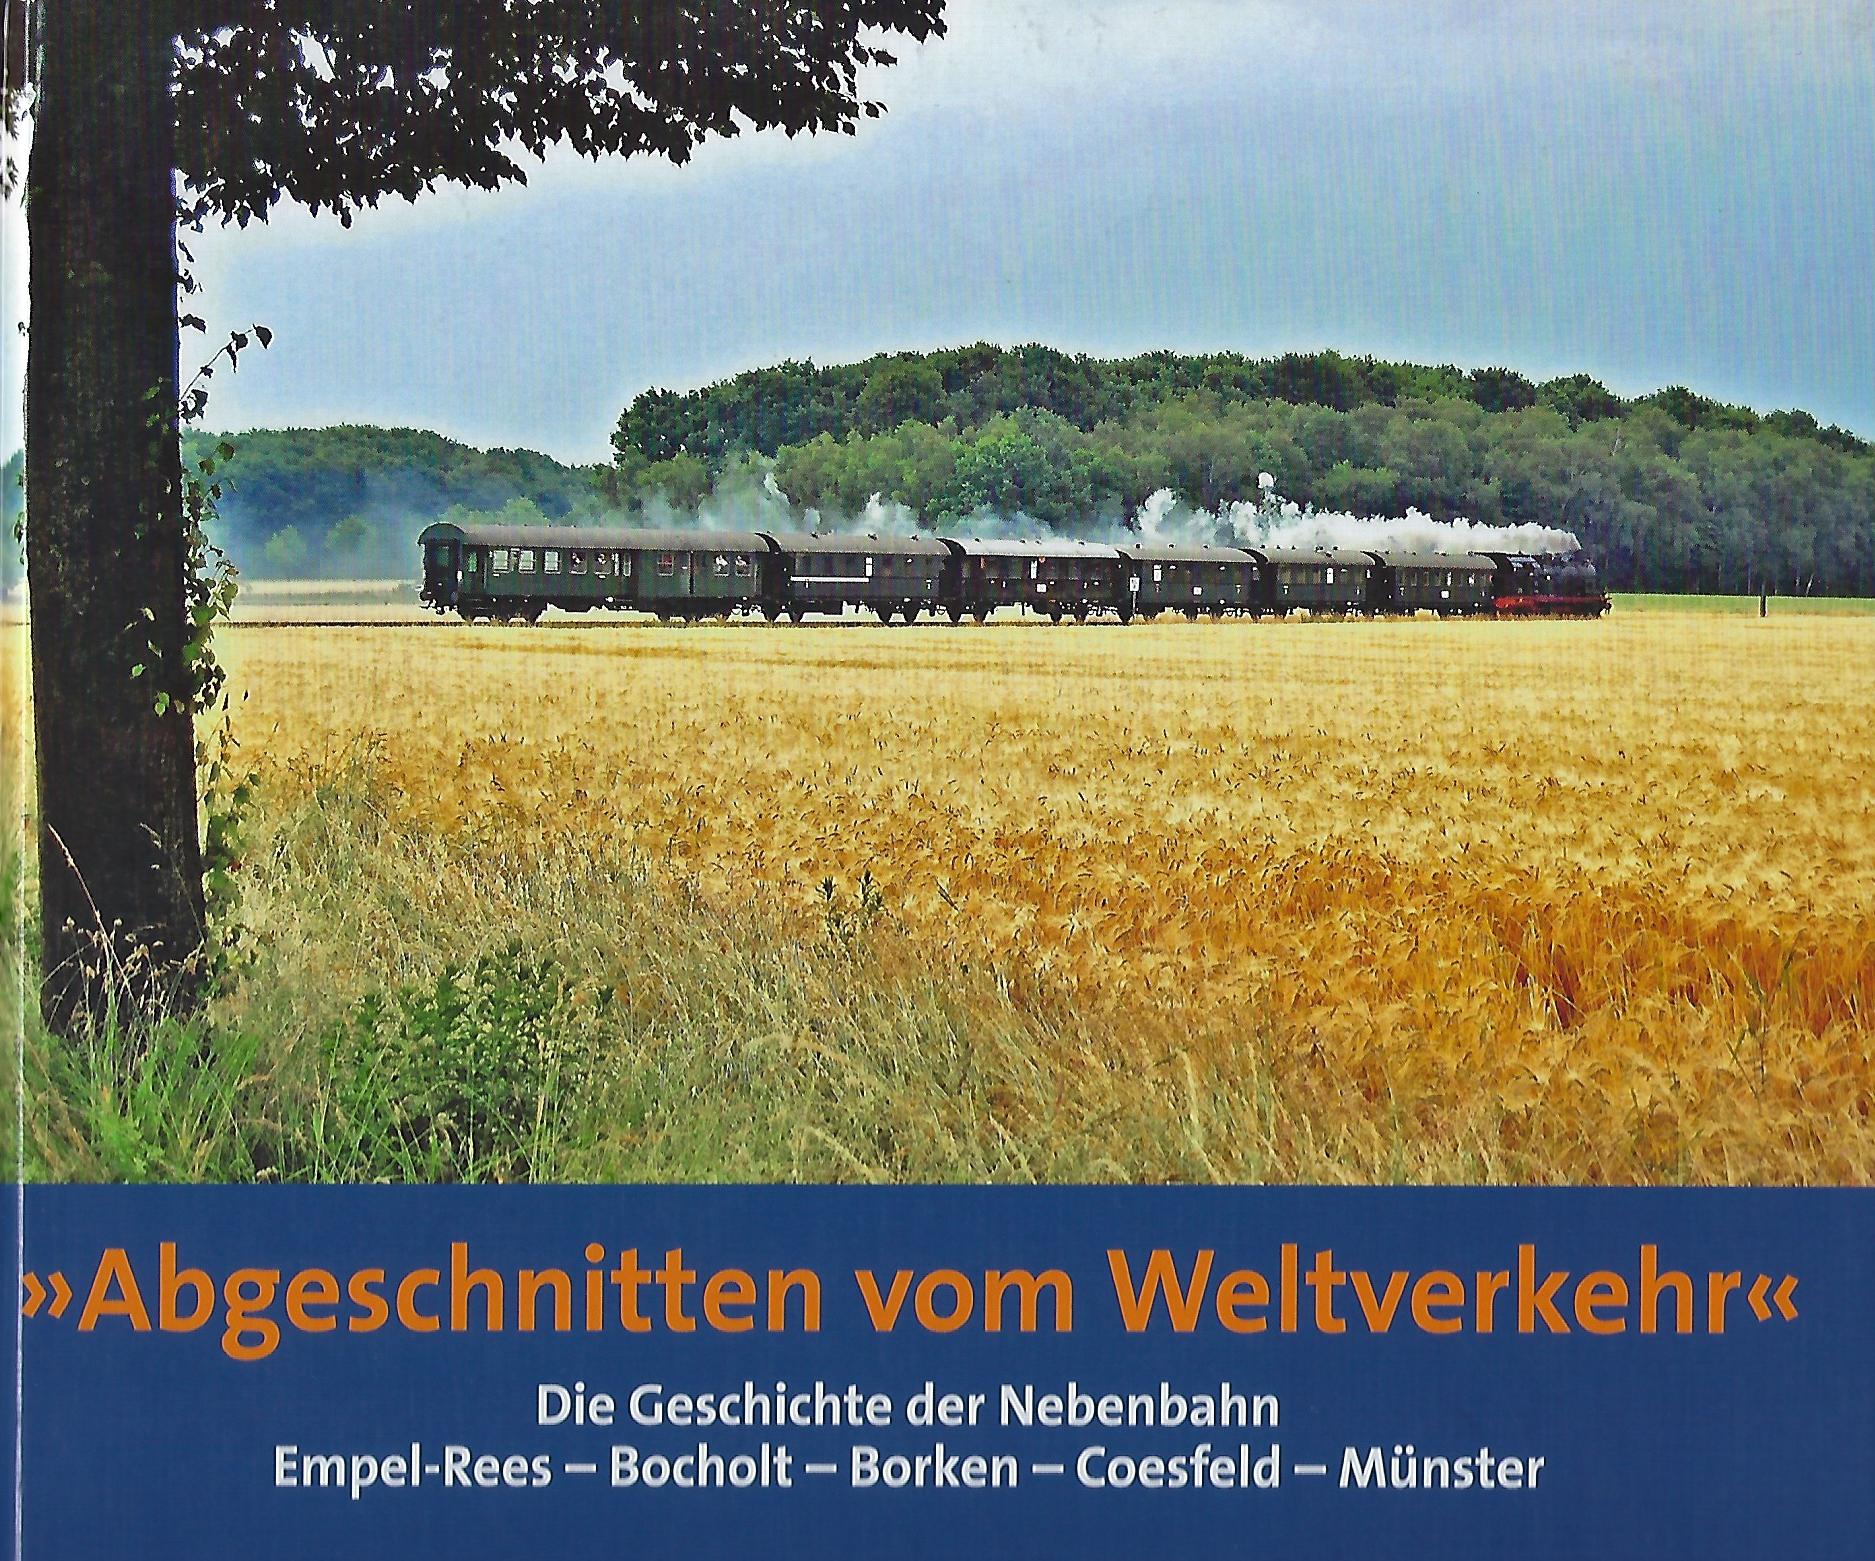 Autoren: Heribert Lülf / Heinz Peirick / Richard Vespermann. Bildfreigabe Umschlag mit freundlicher Unterstützung durch Heribert Lülf